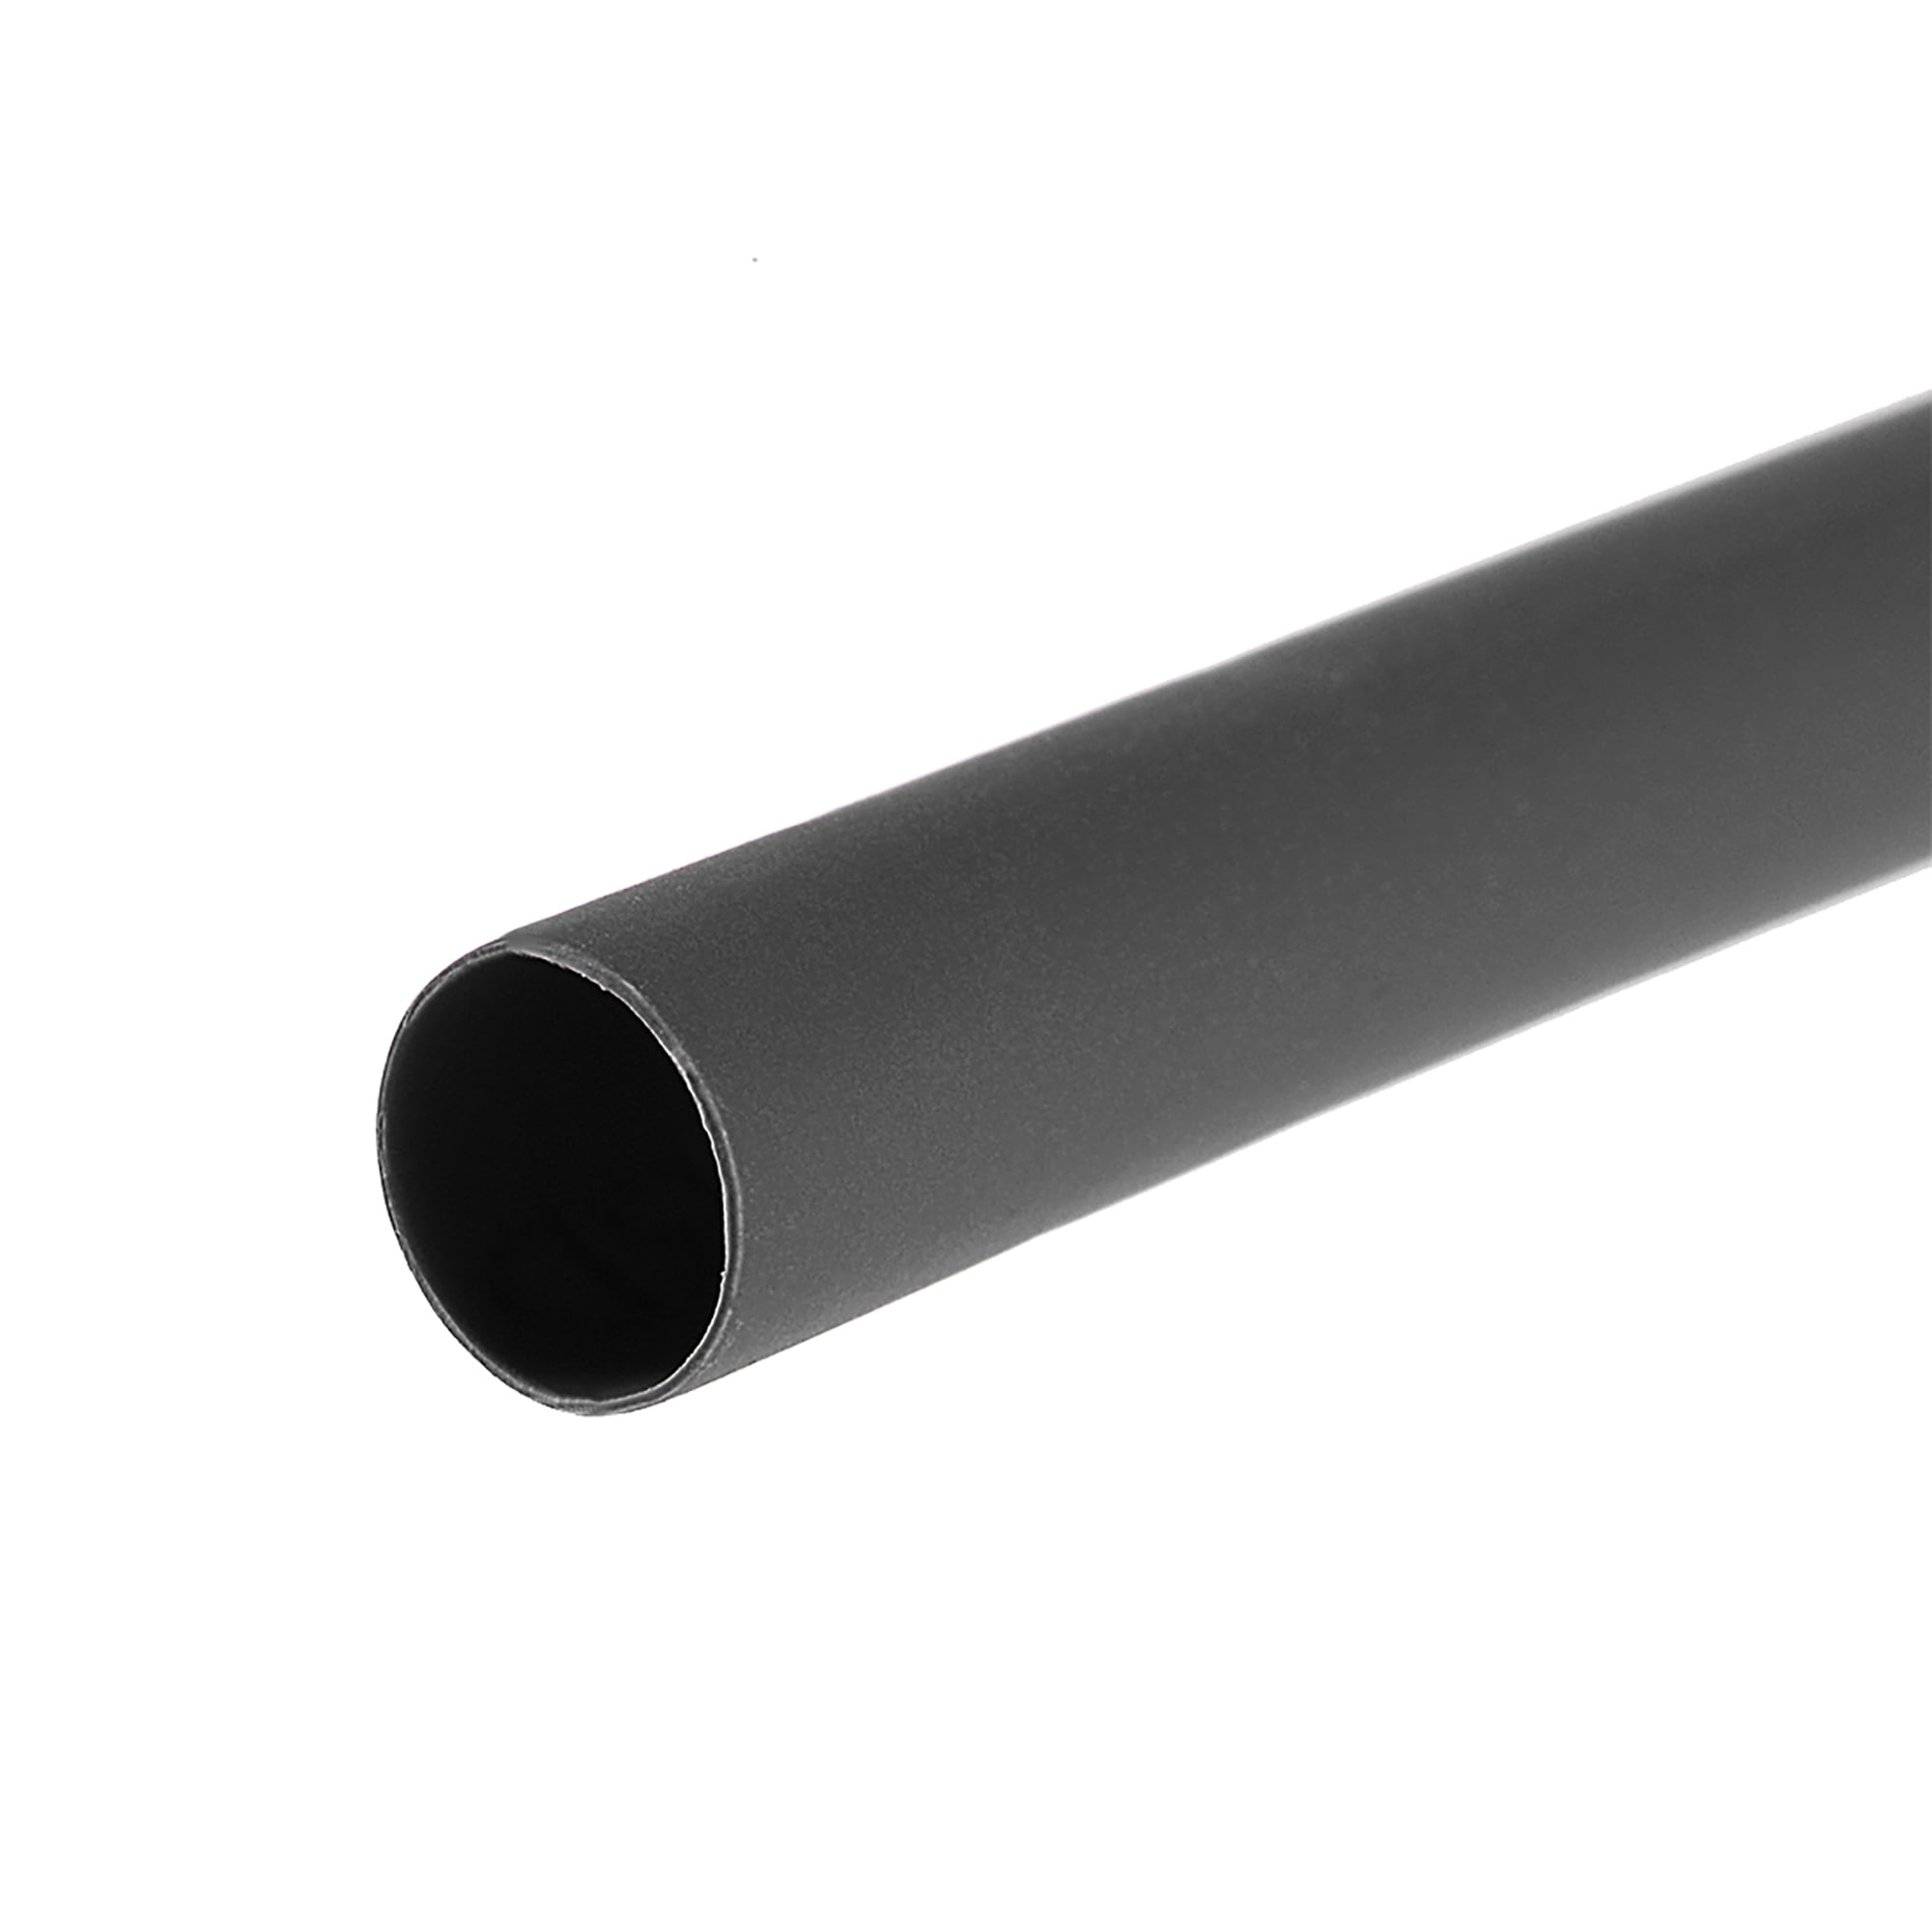 2.4 mm Heat Shrink 3:1 Heatshrink Tube Cable Wire Electrical Sleeving Waterproof 